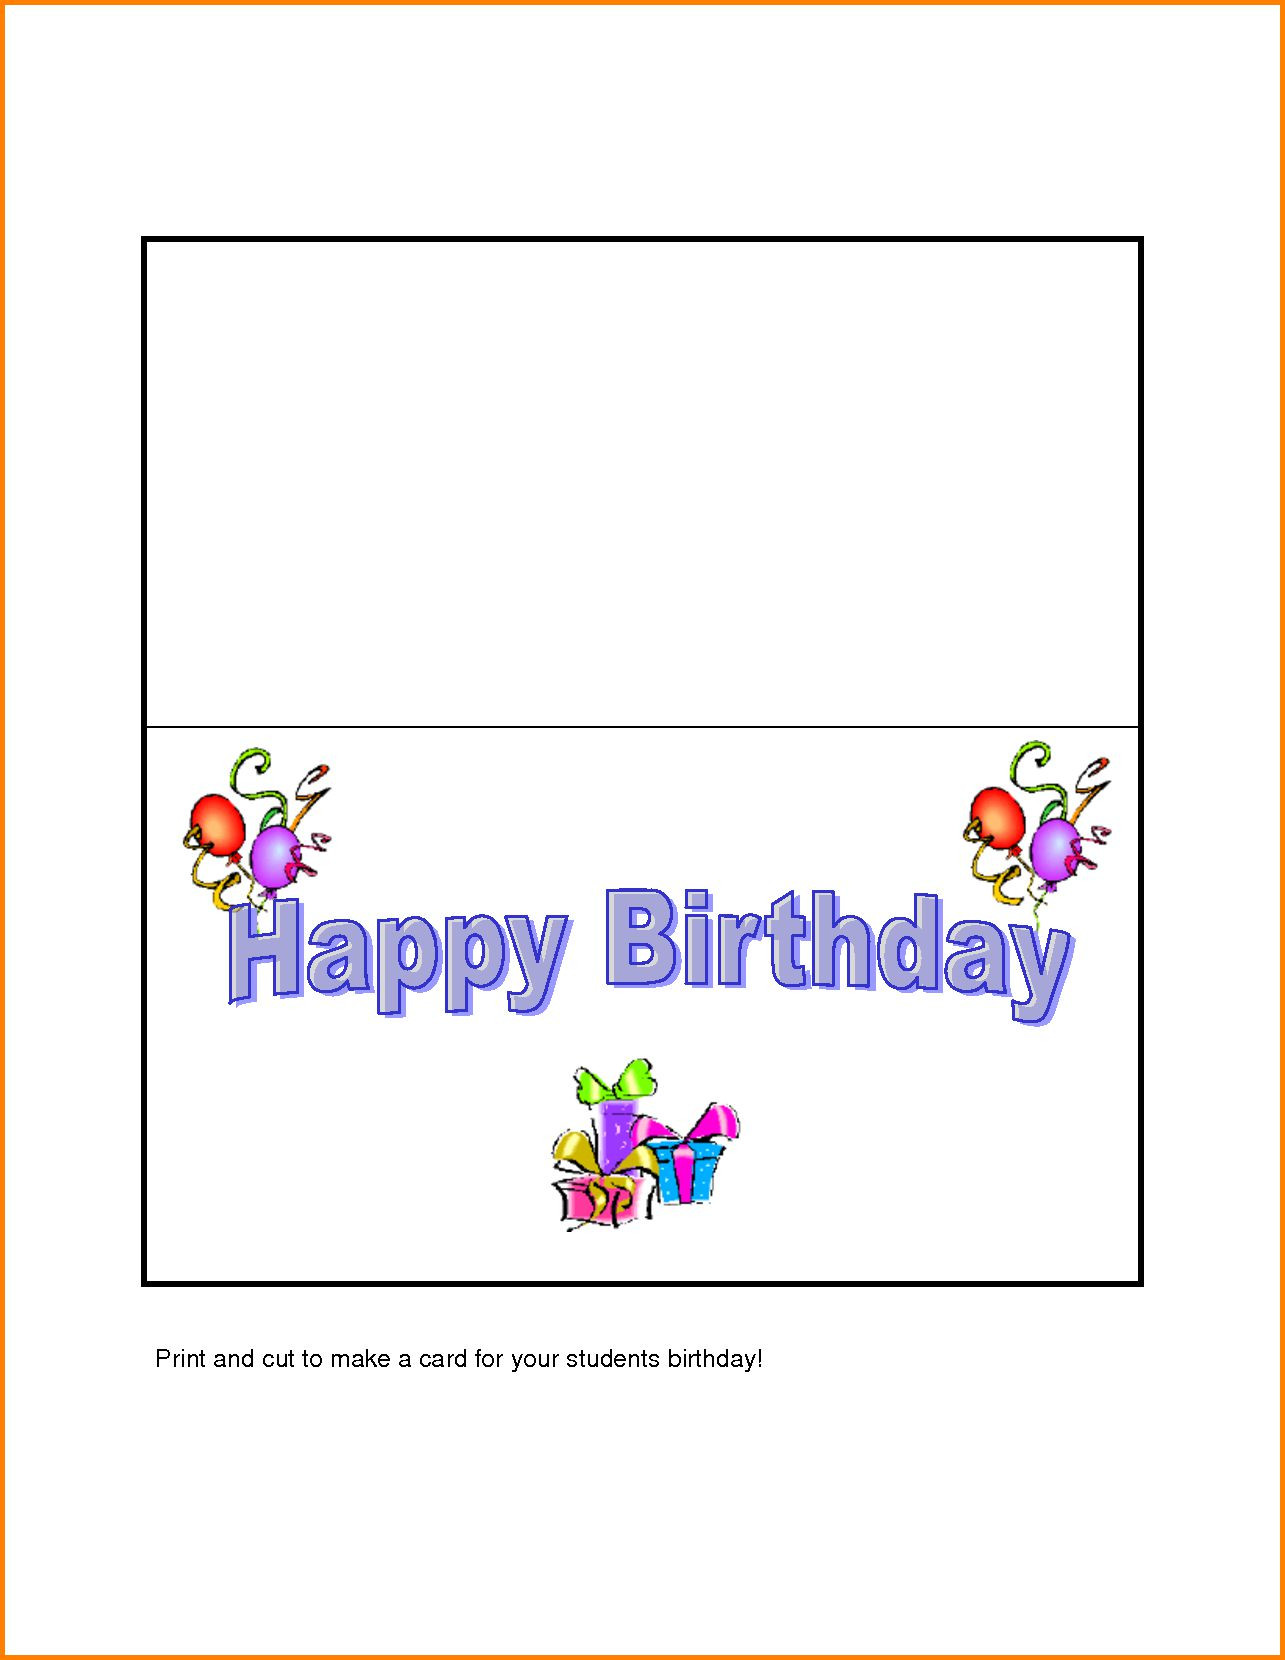 Lustige Geburtstagskarten Zum Ausdrucken Kostenlos
 Lustige Geburtstagskarten Vorlagen Zum Ausdrucken